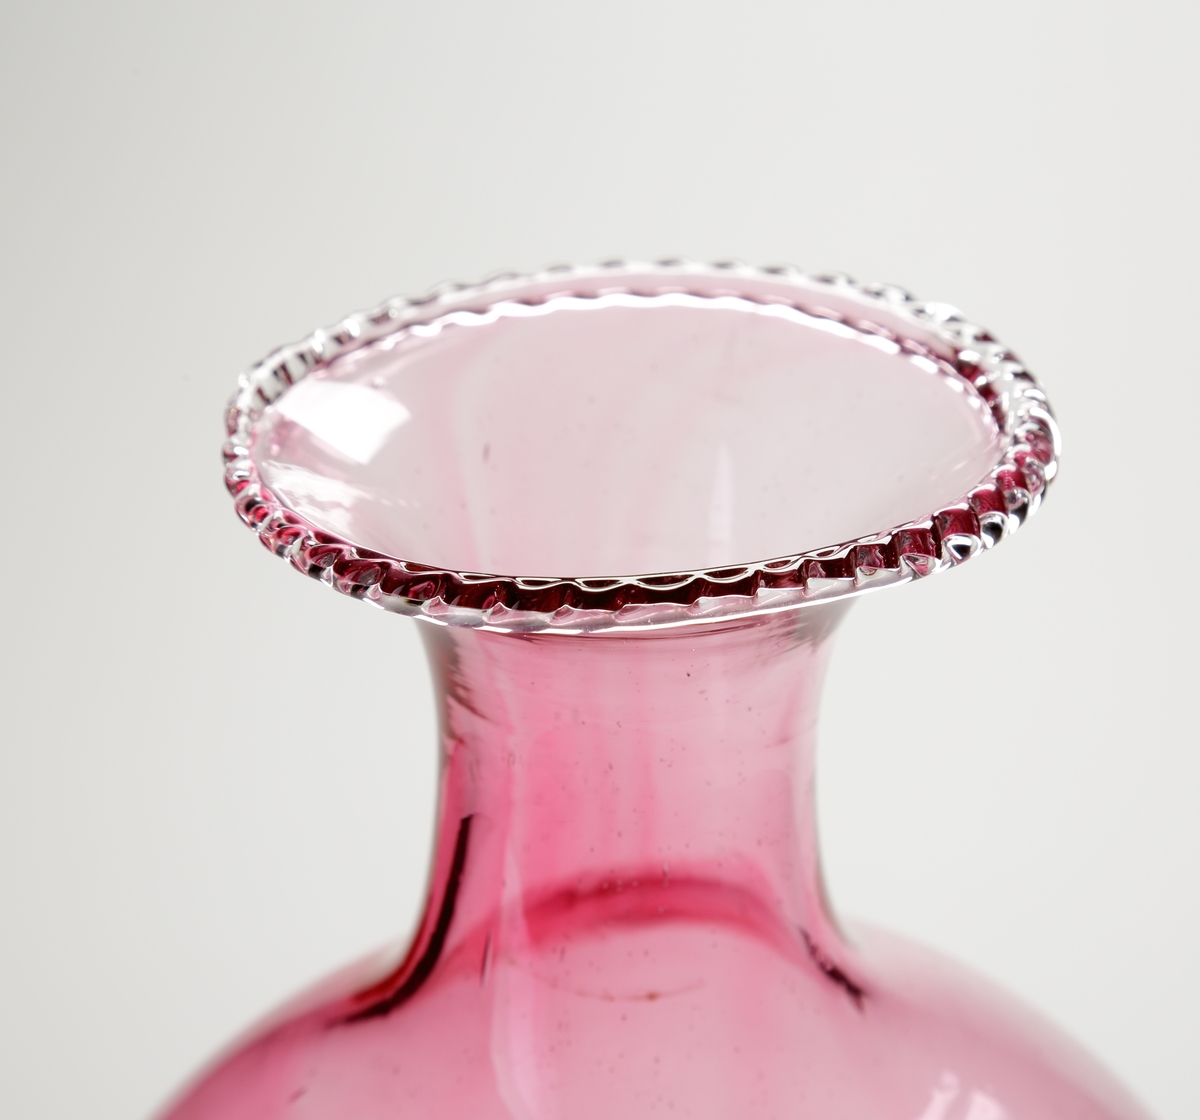 Vas eller pokal.
Stilen på glasen är gjord så att den ska se ålderdomlig ut.
Hög rosa vas/pokal som vidgar sig uppåt, och avslutas i en smal hals med utvikt mynning. På mynningen en ofärgad och naggad glastråd.
Benet är ofärgat och utgörs av tre vulster.  
Foten rosa.